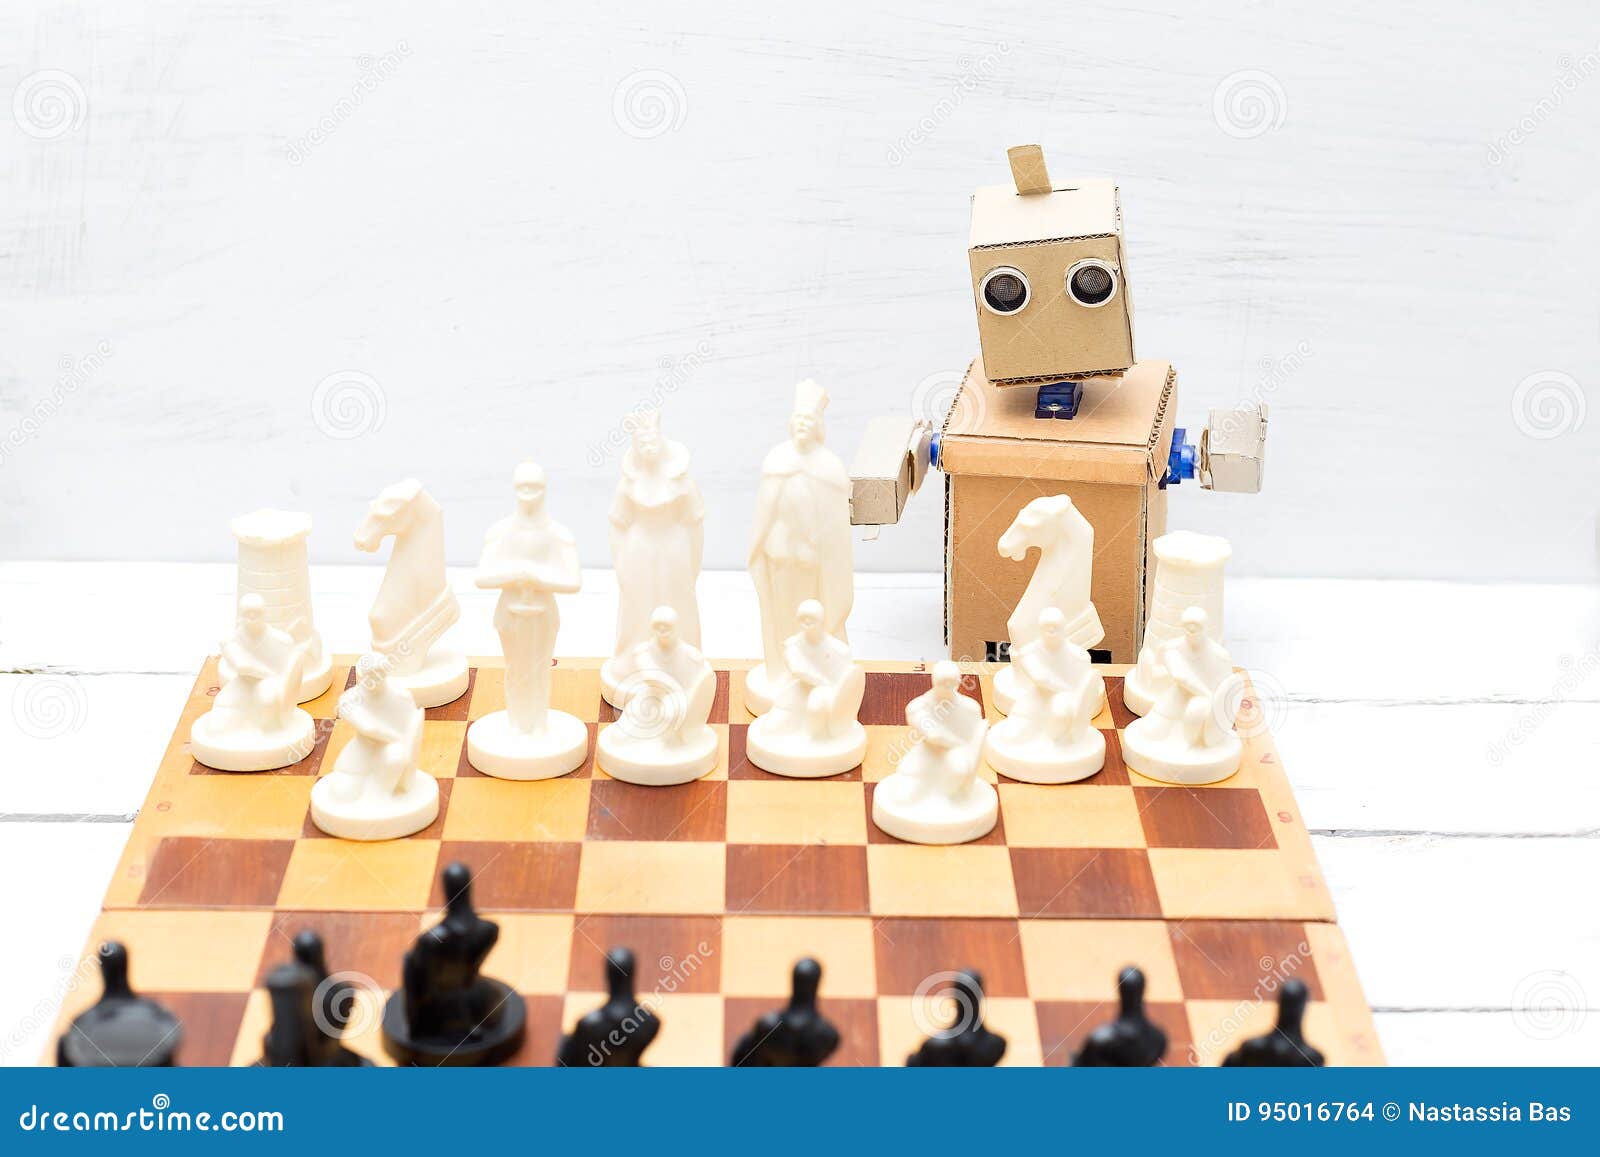 Um jogo de xadrez onde as peças se movem com Inteligência Artificial